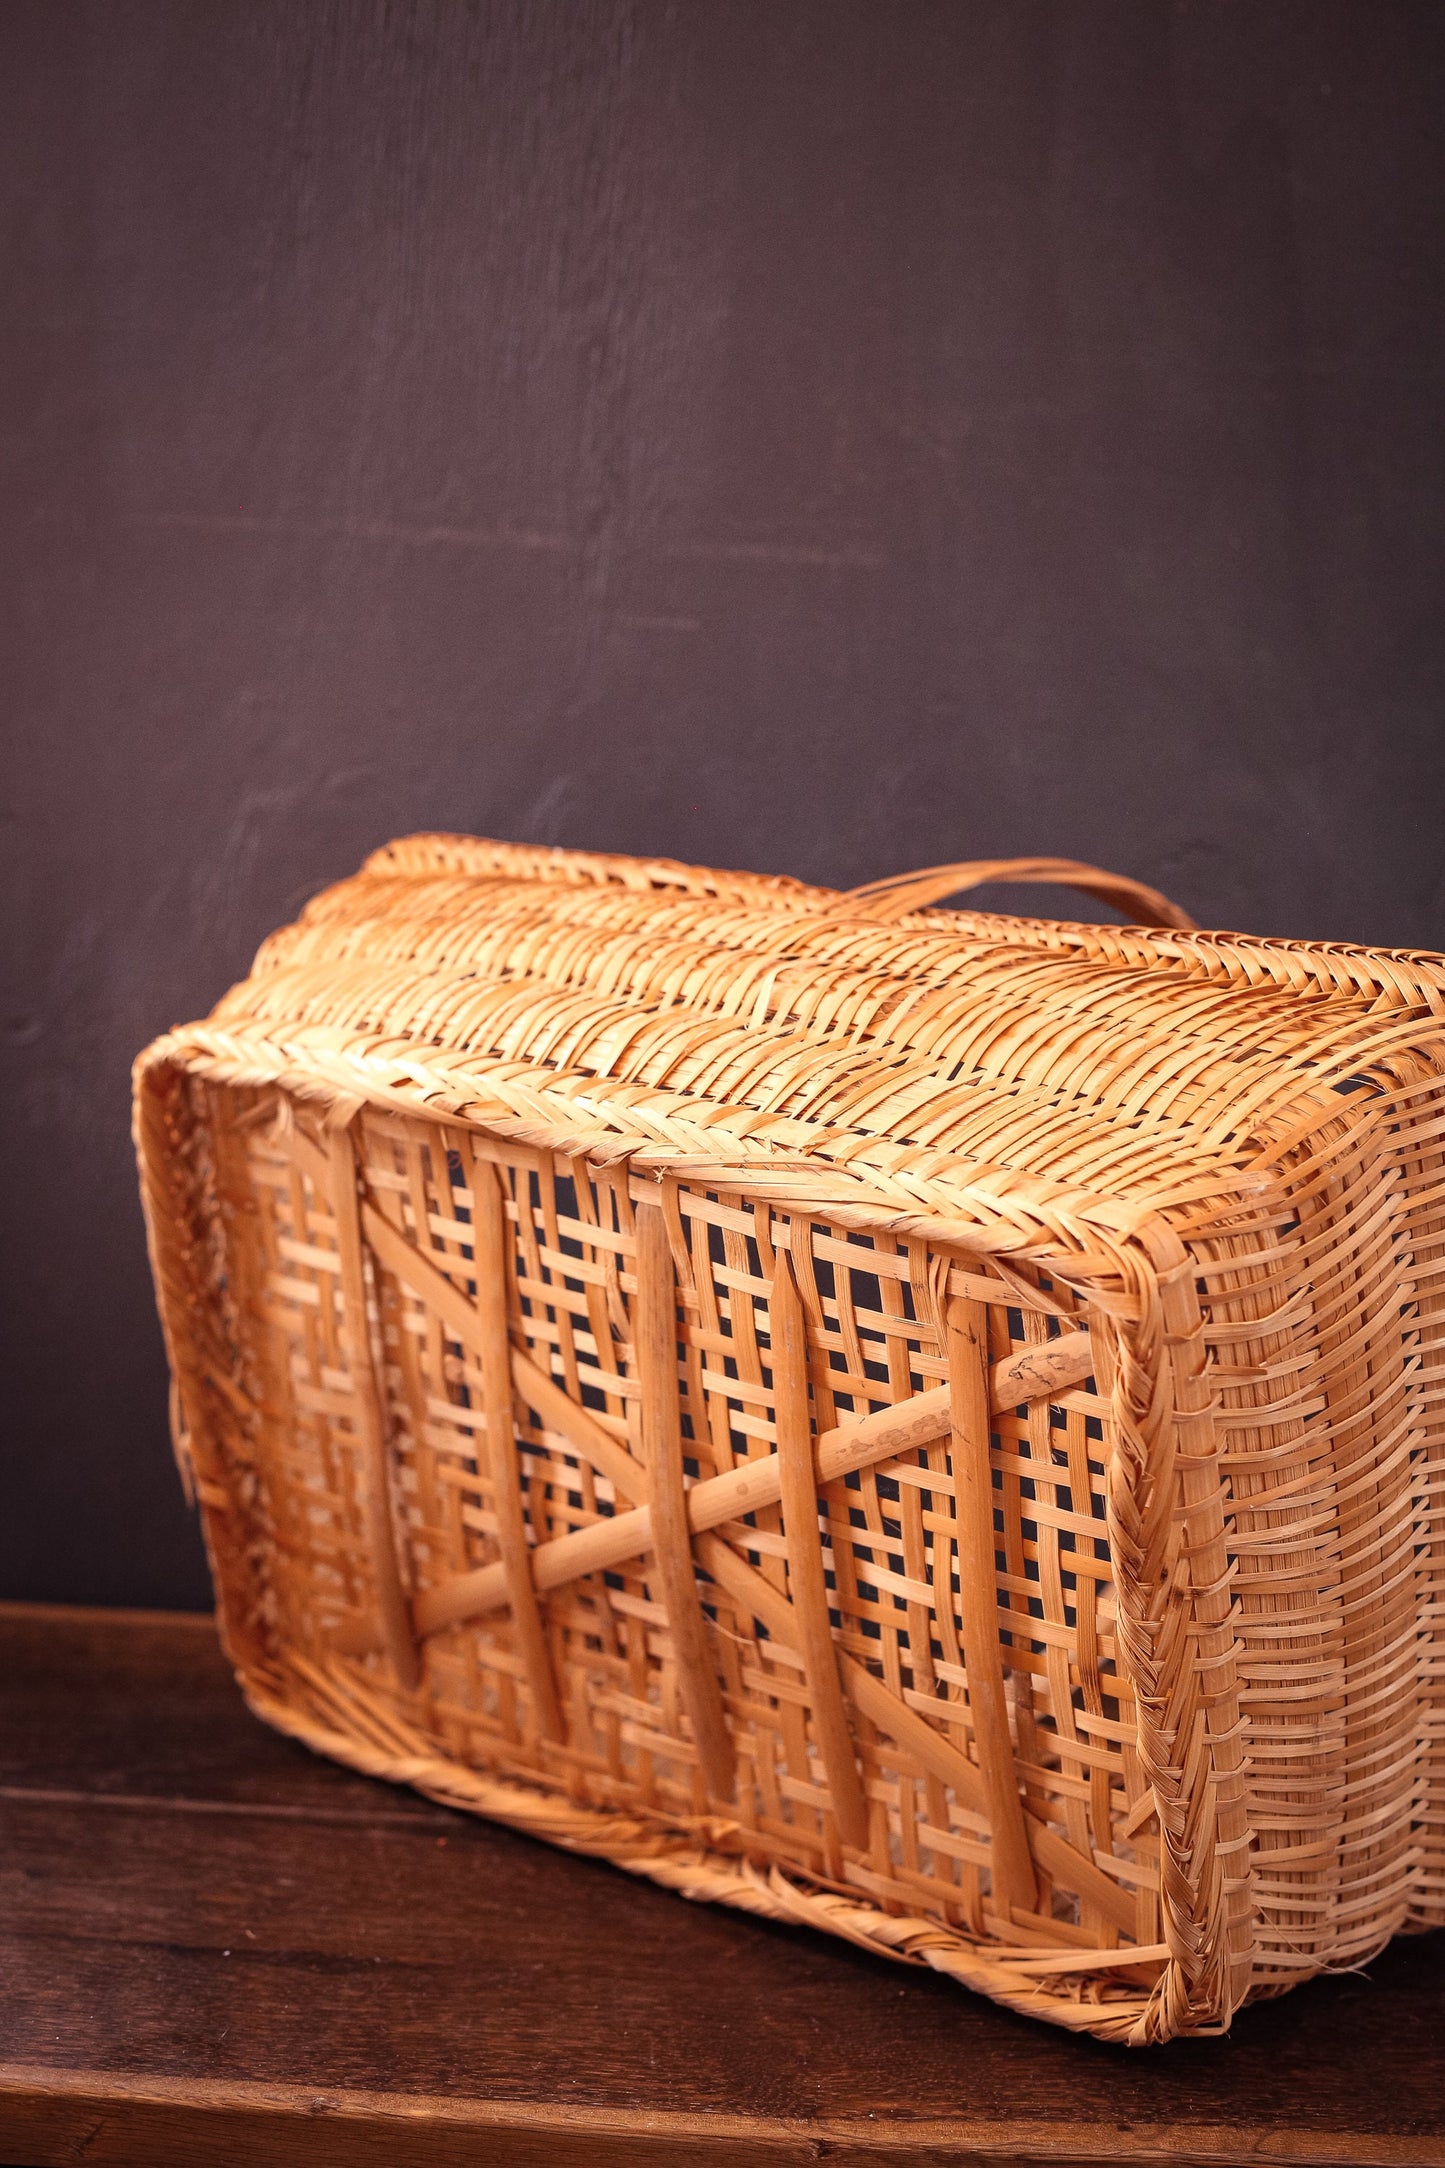 Fine Wicker Rectangle Flat Bottom Gathering Basket with Handle - Vintage Rattan Harvest Basket